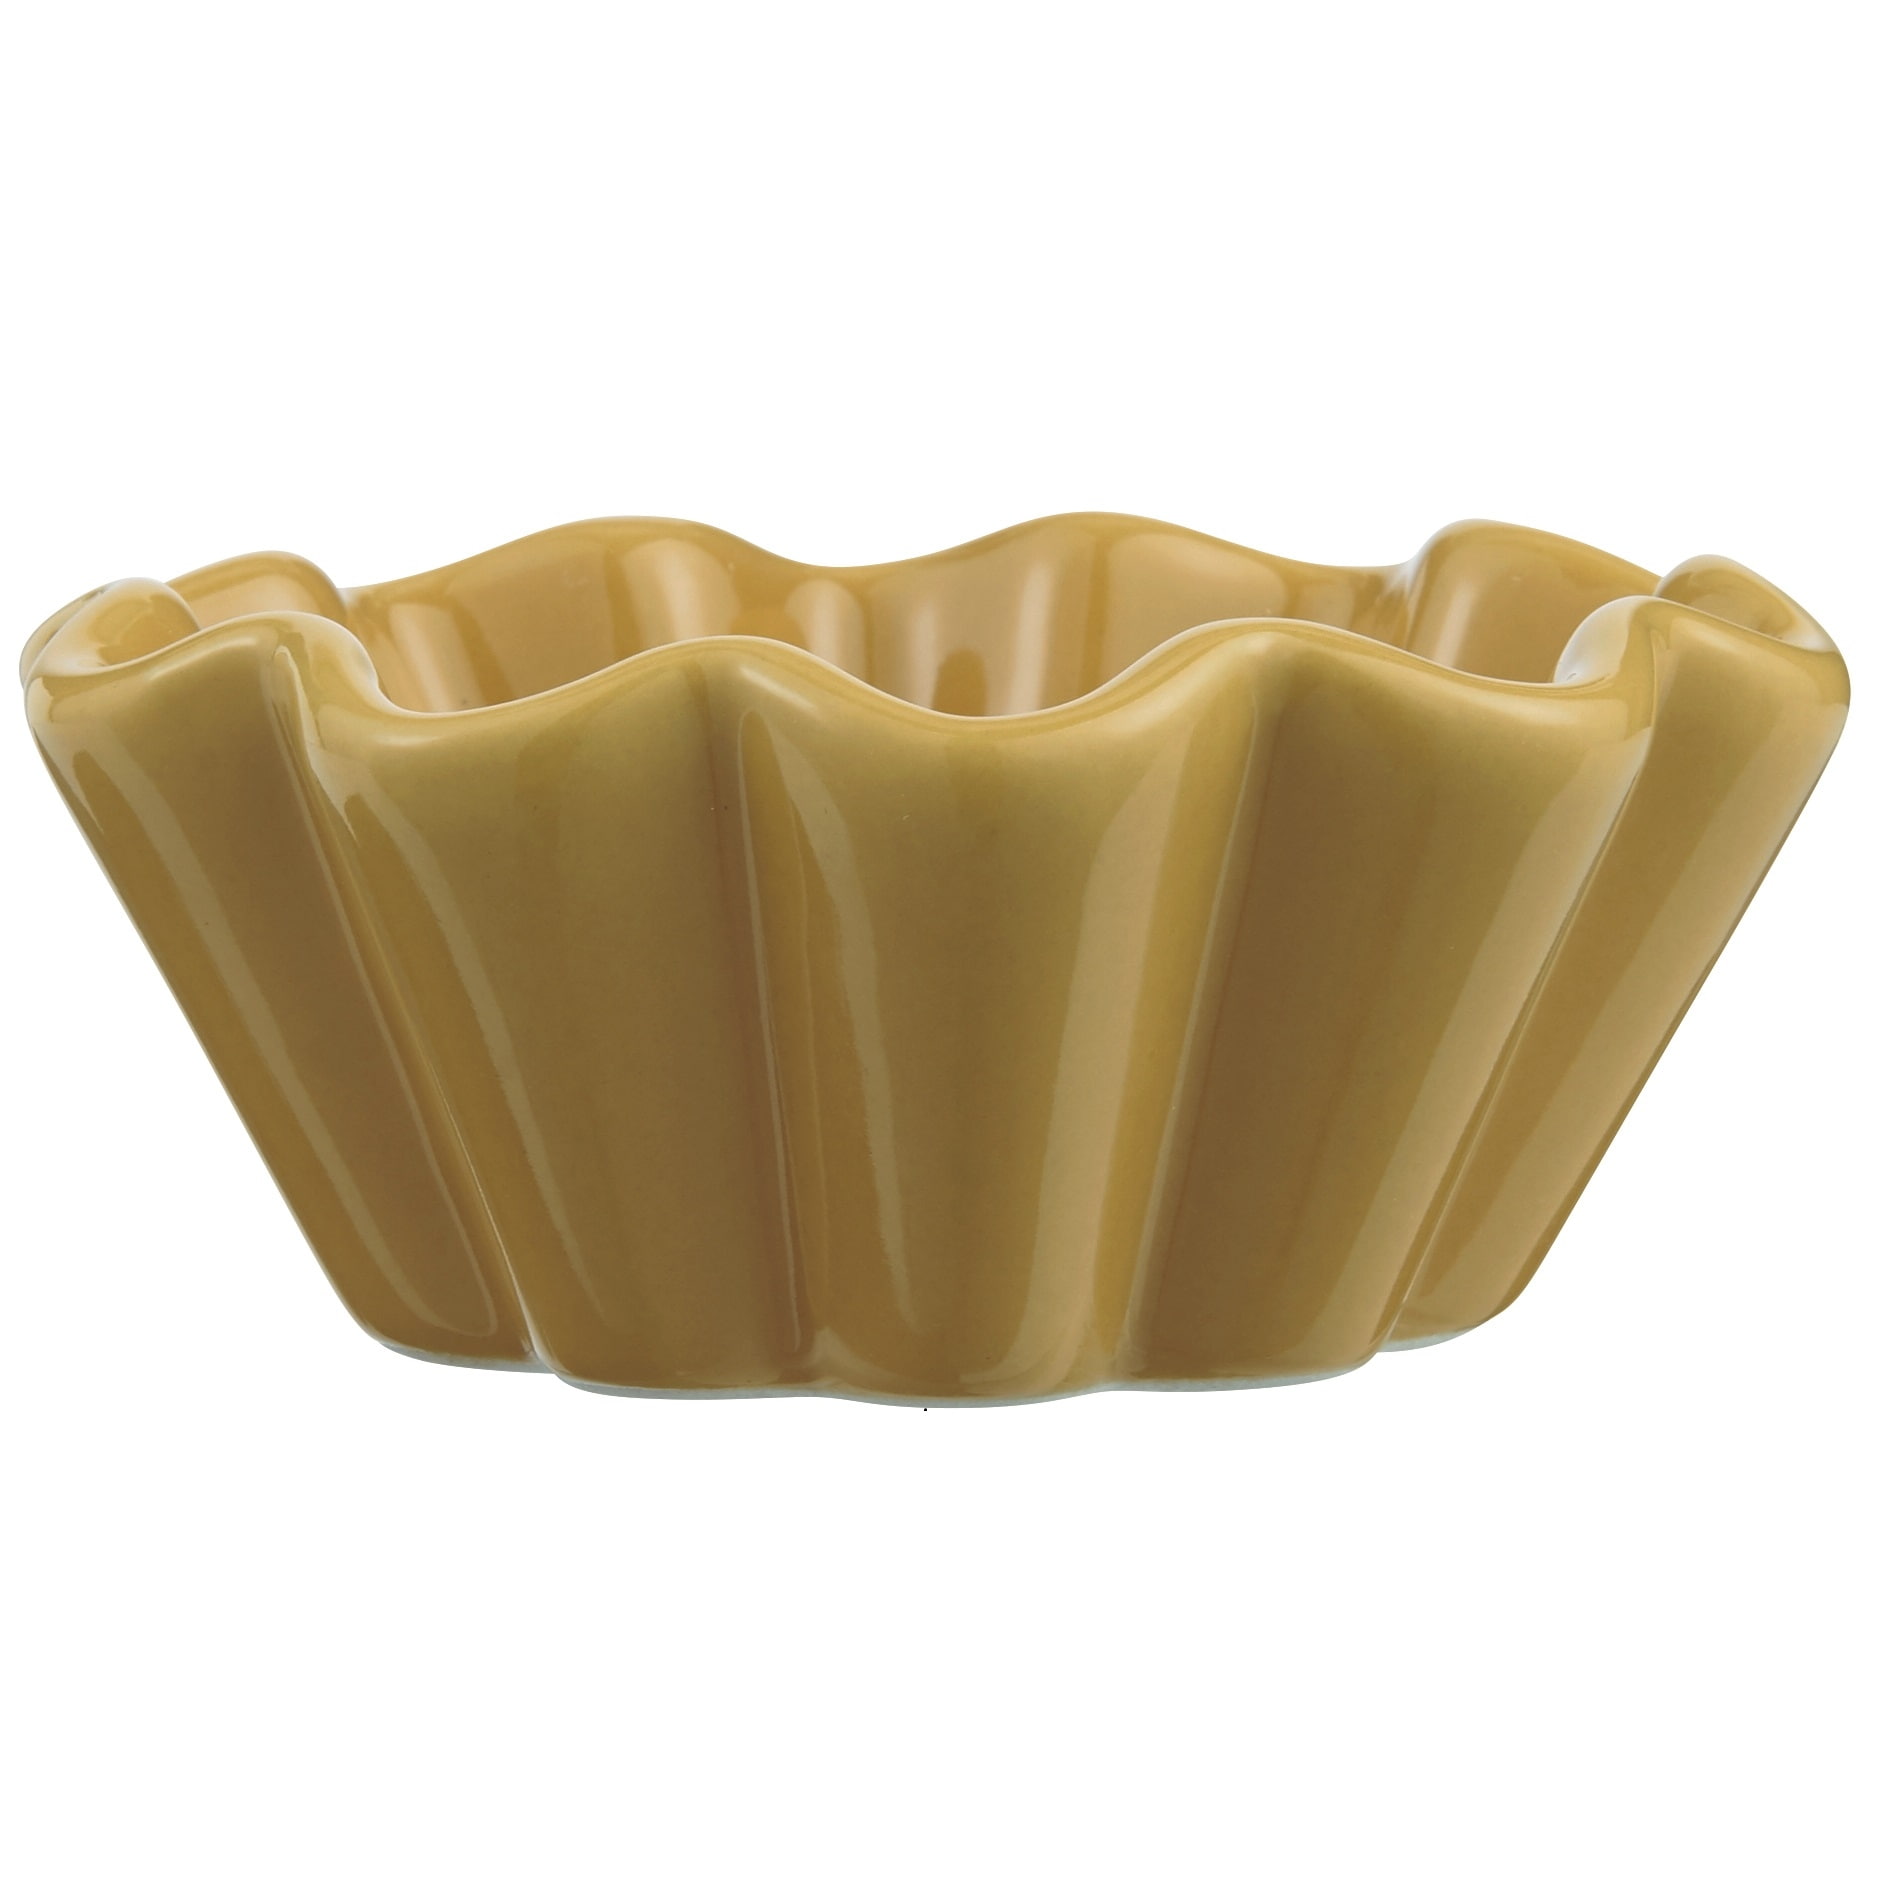 IB LAURSEN Keramická forma na muffiny Mynte Mustard, žlutá barva, keramika